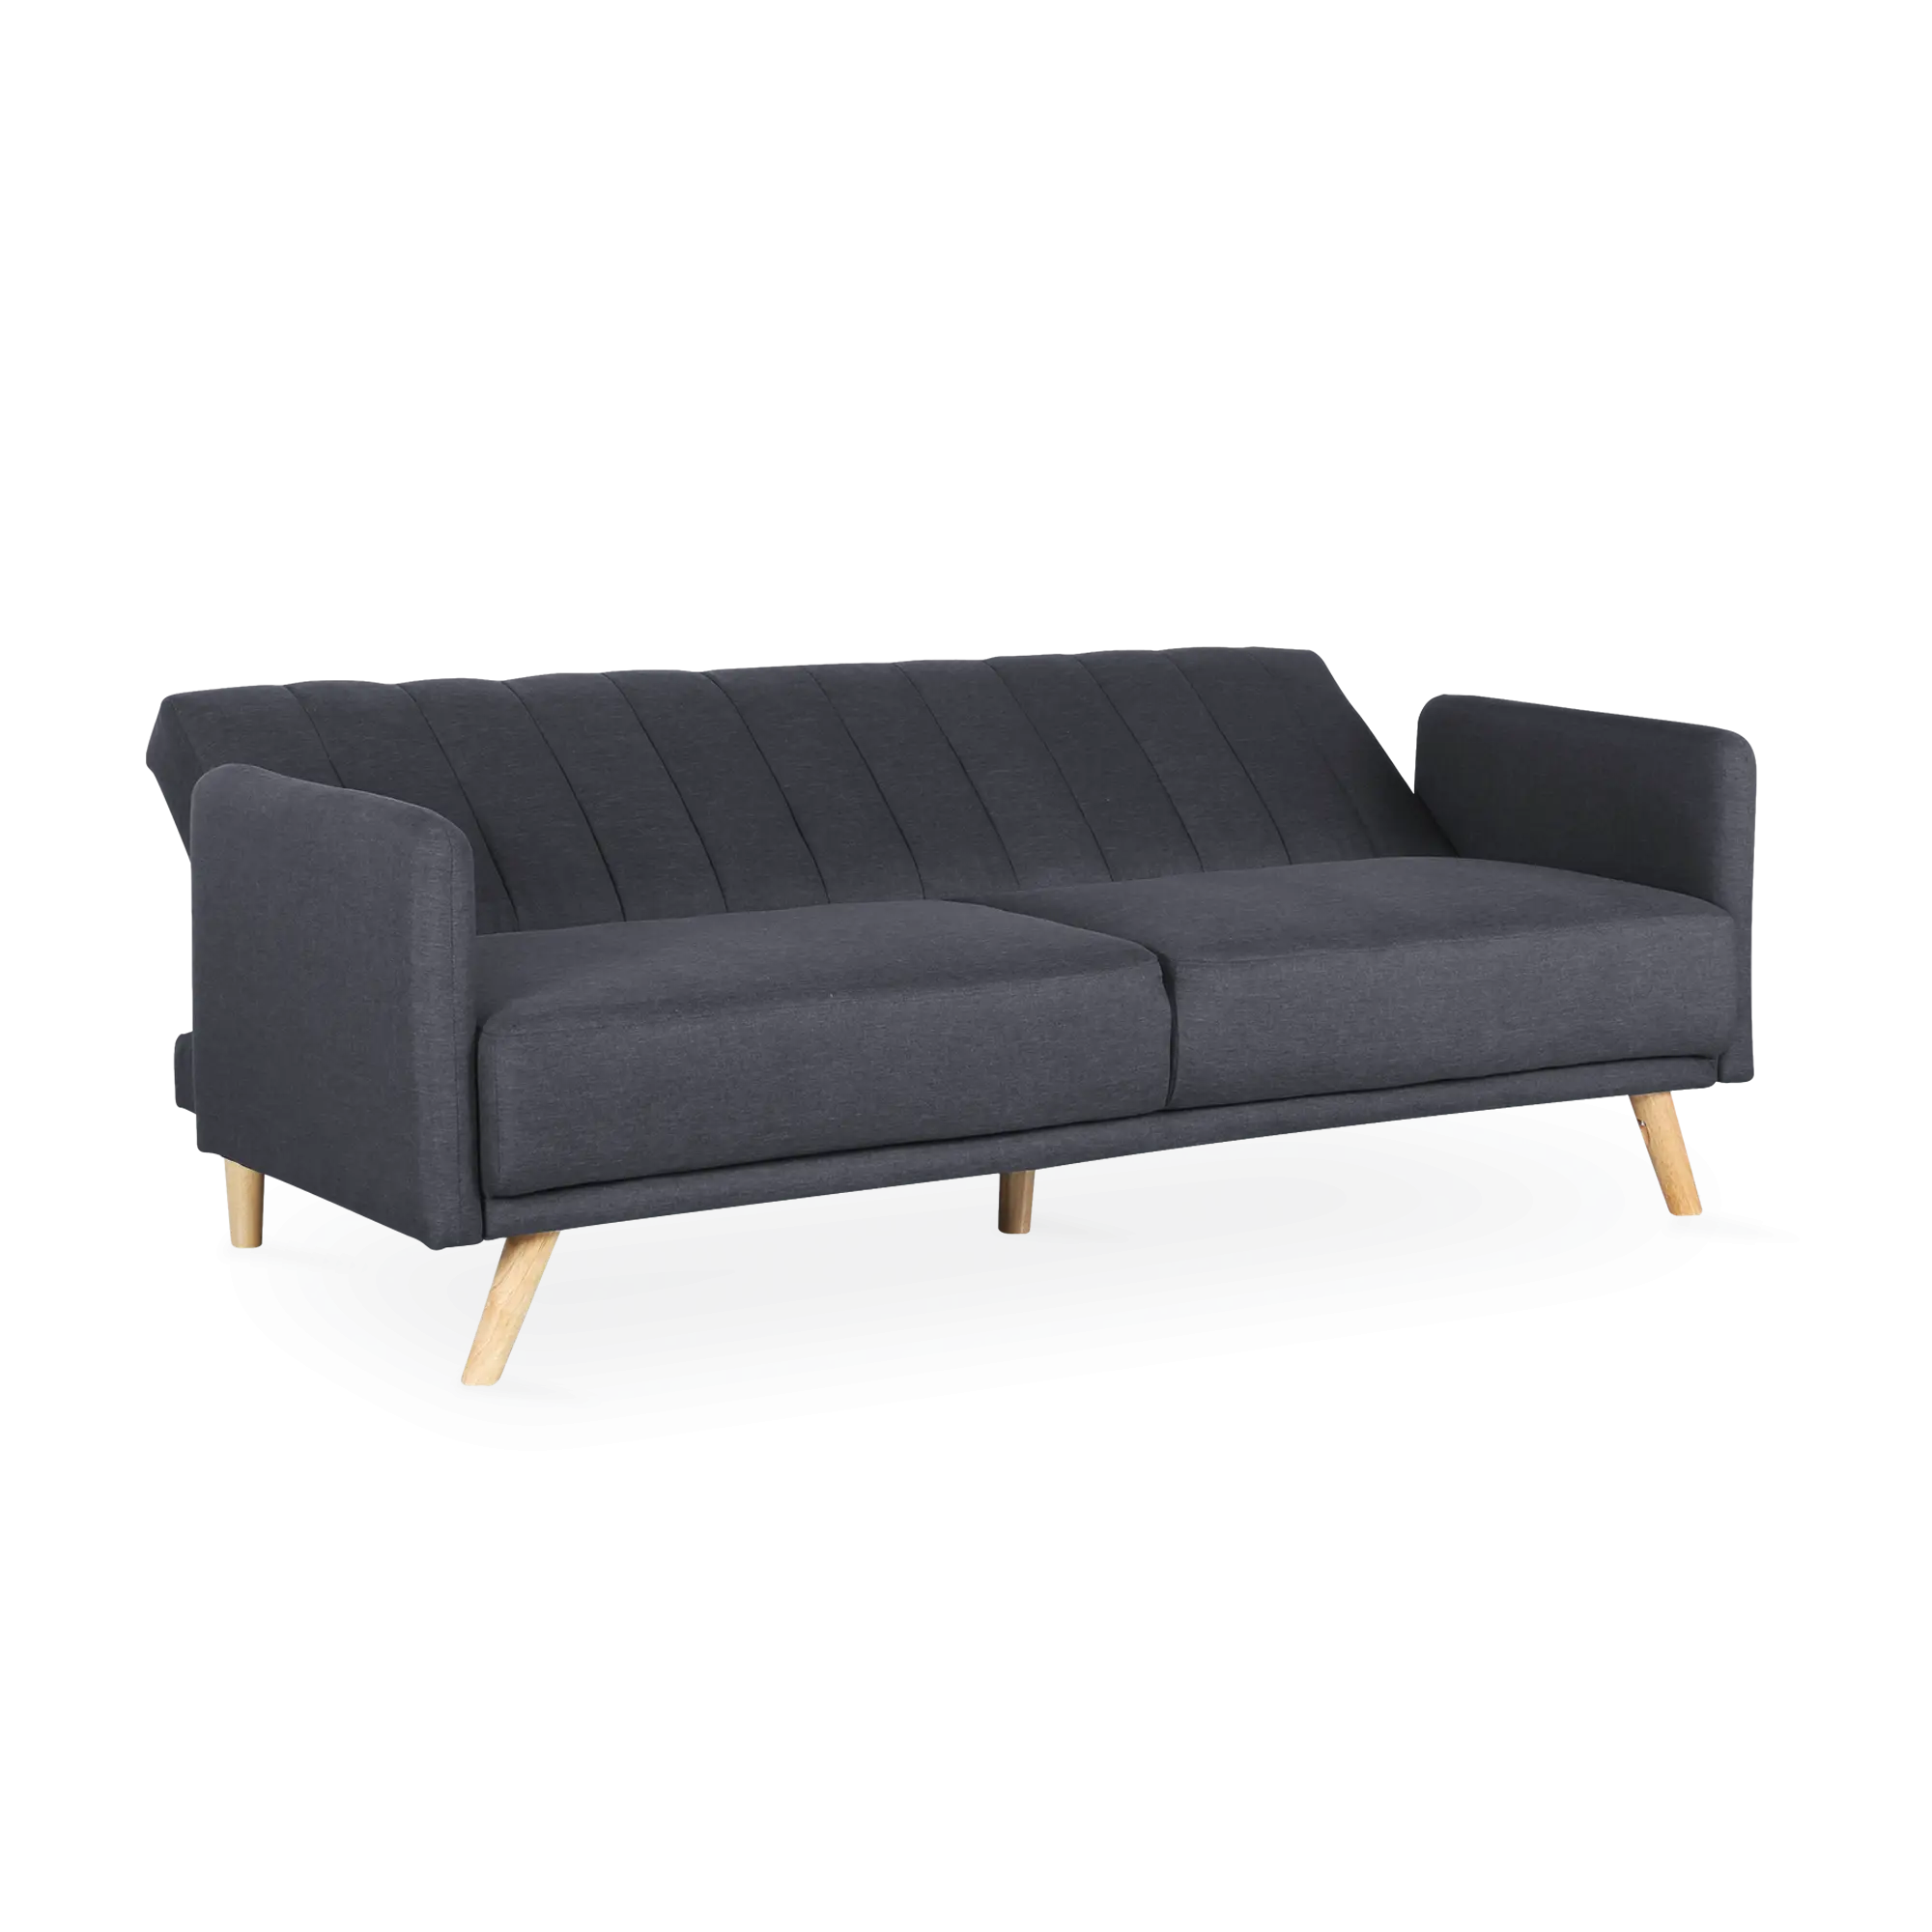 Canapé lit convertible en tissu ✅ PAS CHER ✅